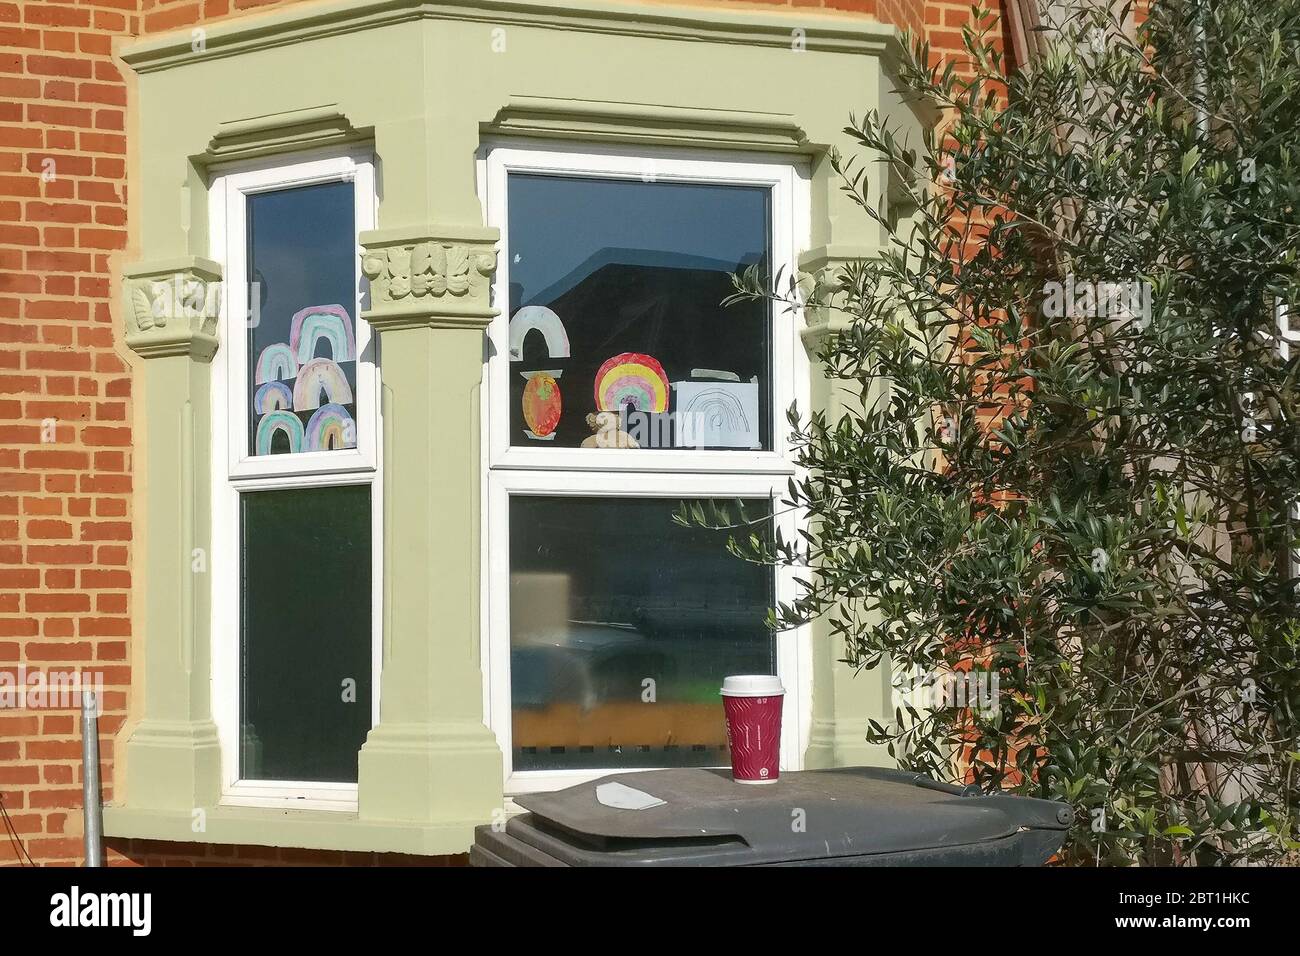 Londres, Reino Unido - 04 de mayo de 2020: Arco iris de papel hecho a mano desplegado en la ventana de casa en Lewisham, expresando gratitud a NHS durante covid 19 Foto de stock